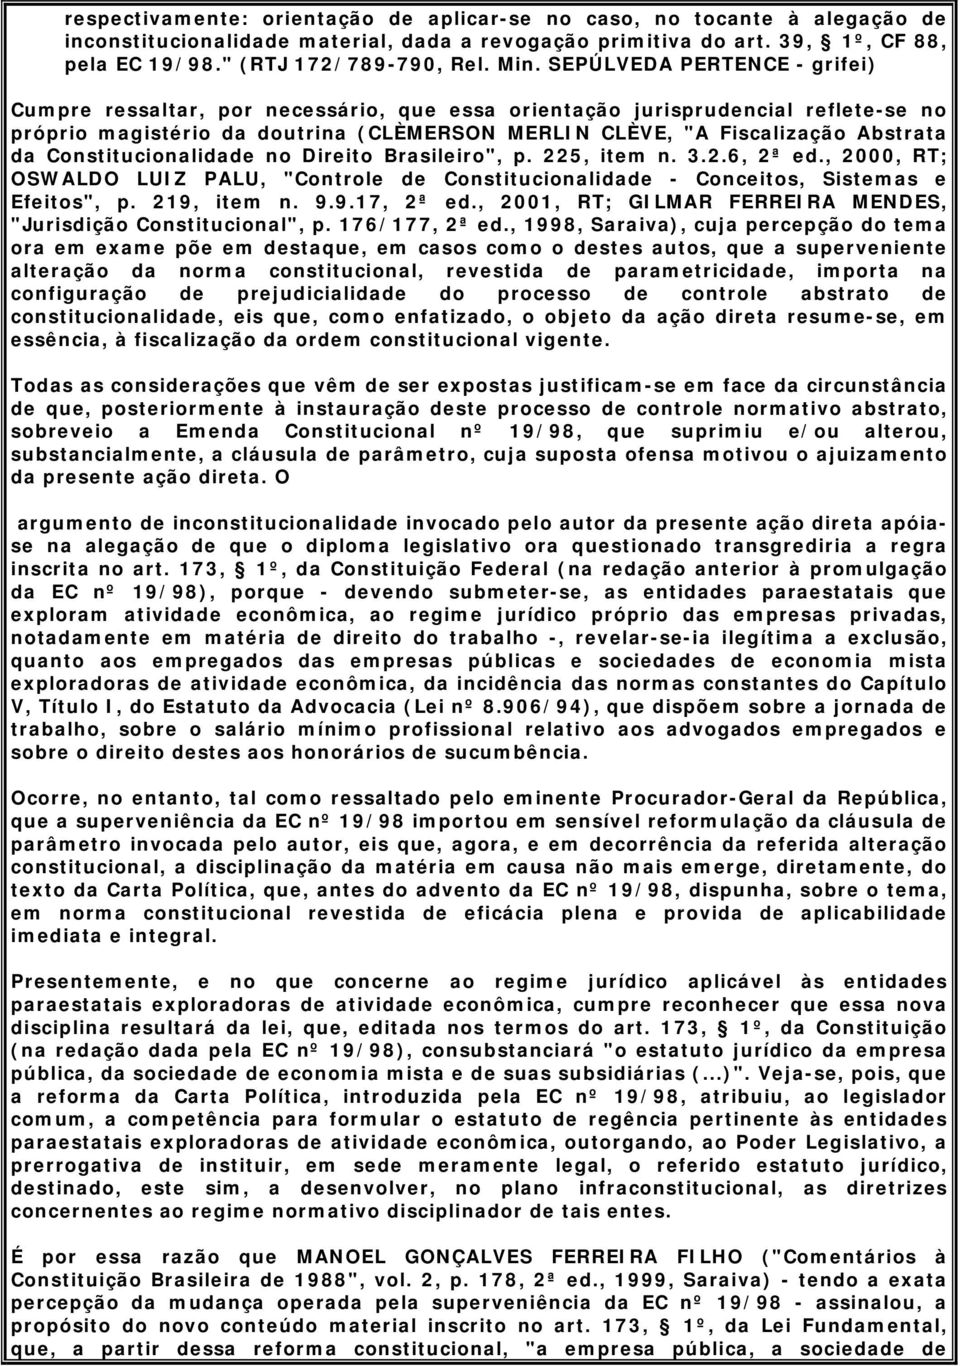 da Constitucionalidade no Direito Brasileiro", p. 225, item n. 3.2.6, 2ª ed., 2000, RT; OSWALDO LUIZ PALU, "Controle de Constitucionalidade - Conceitos, Sistemas e Efeitos", p. 219, item n. 9.9.17, 2ª ed.